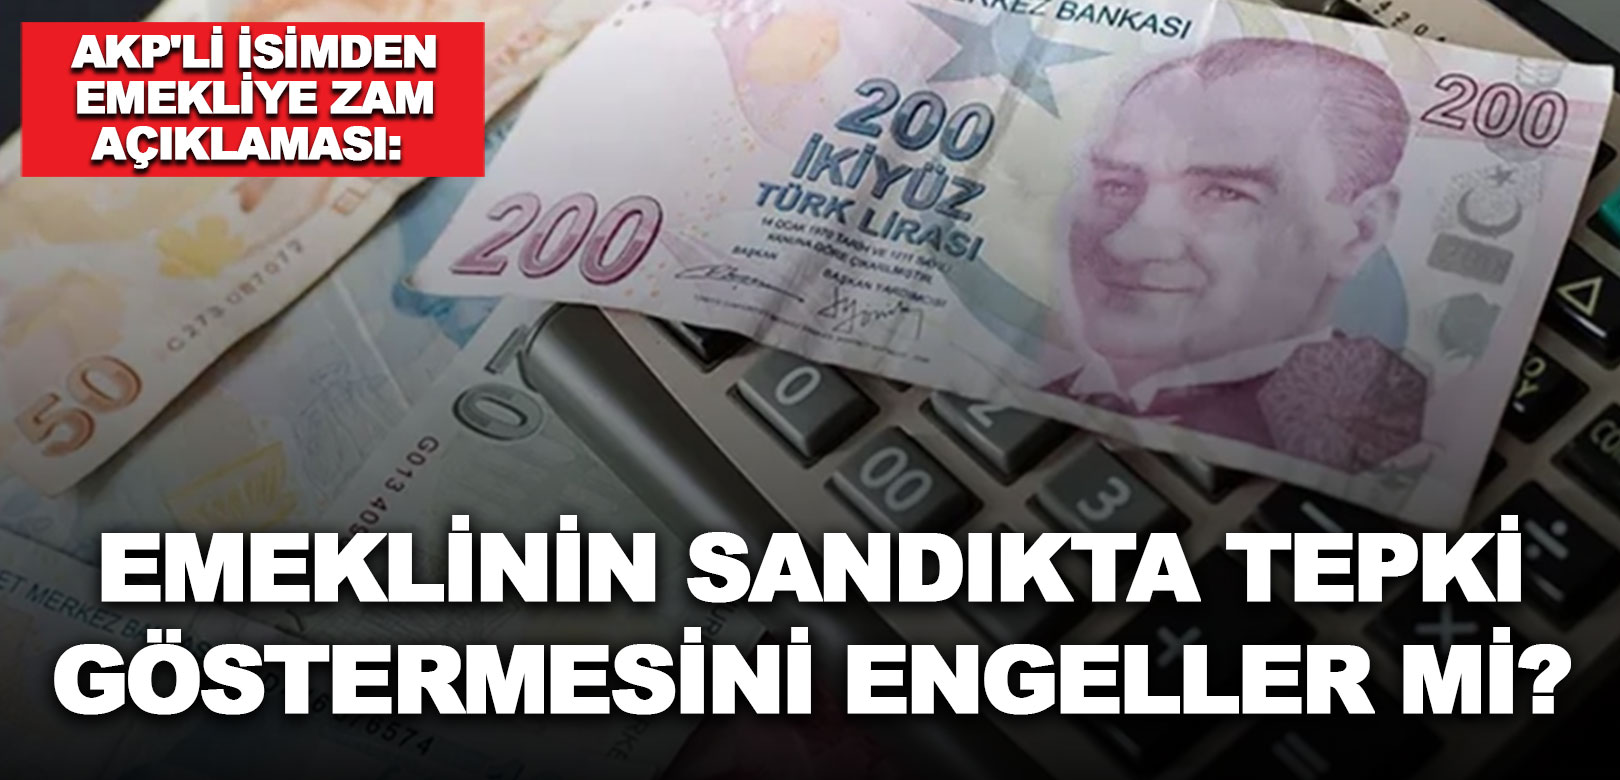 AKP'li isimden emekliye zam açıklaması: Emeklinin sandıkta tepki göstermesini engeller mi?